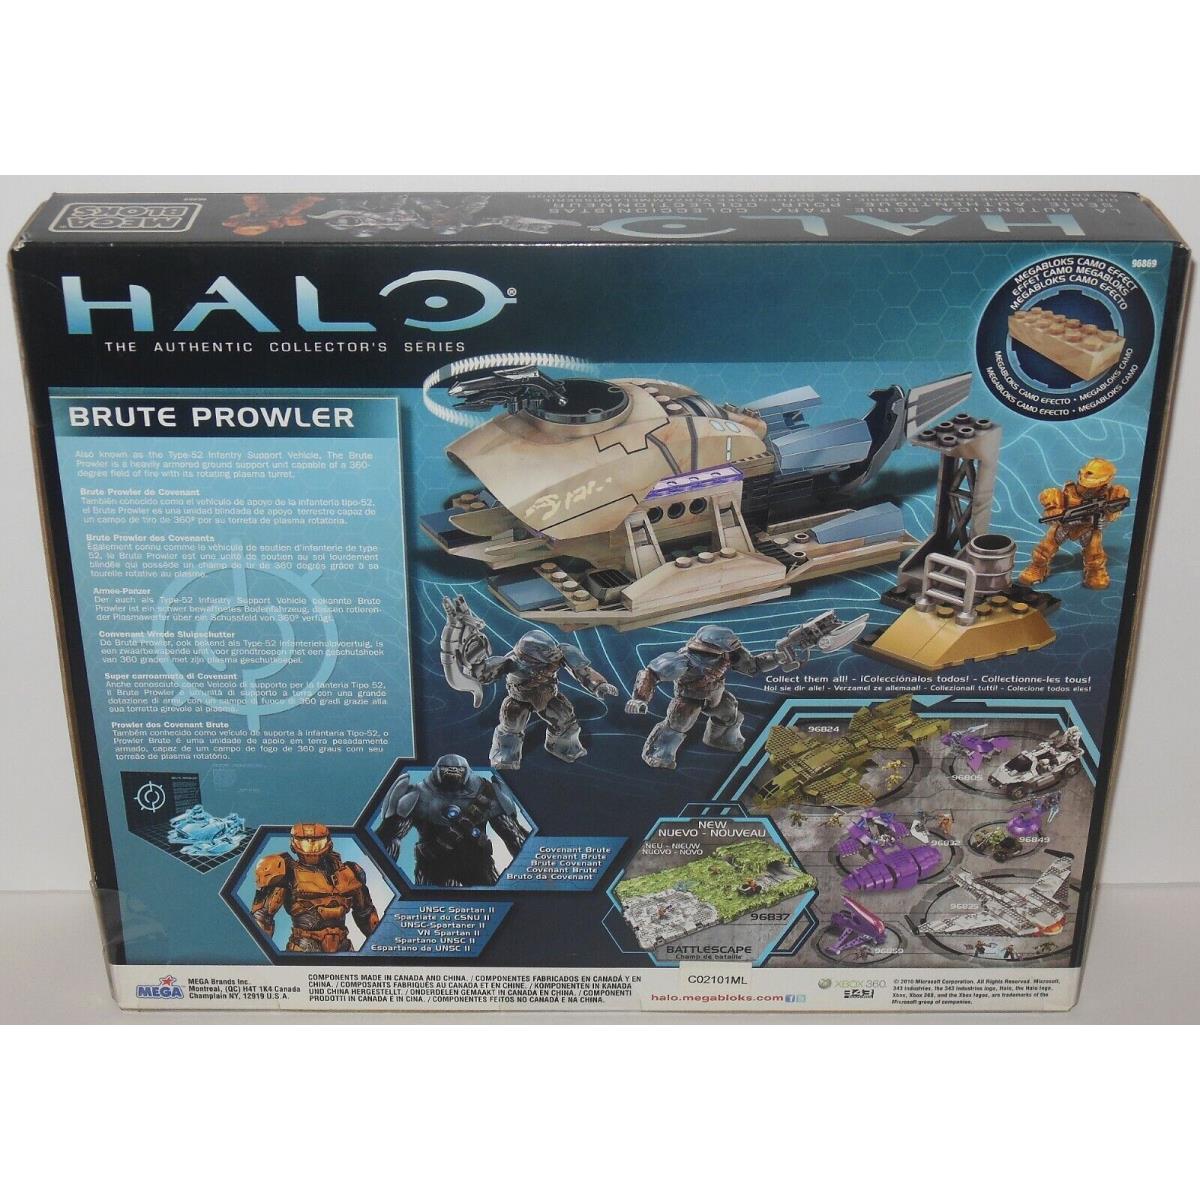 New: Mega Bloks: Halo Covenant Brute Prowler 96869: Set